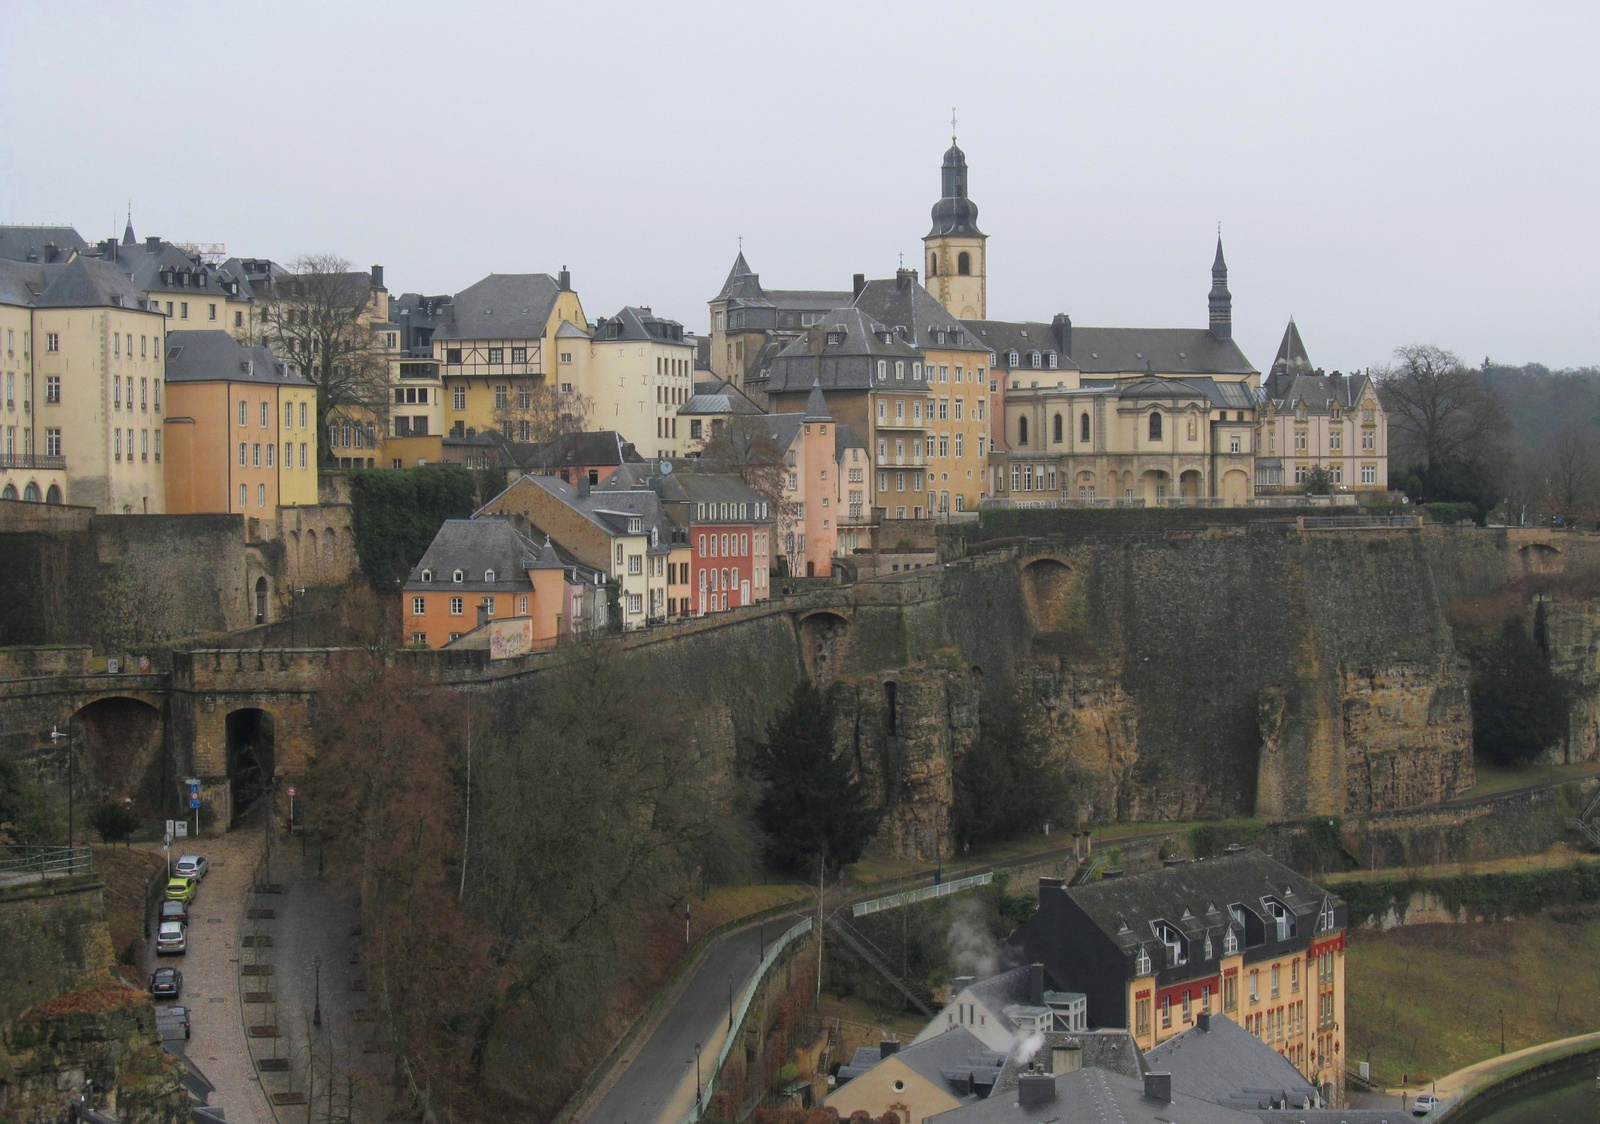 Luxemburg óvárosa